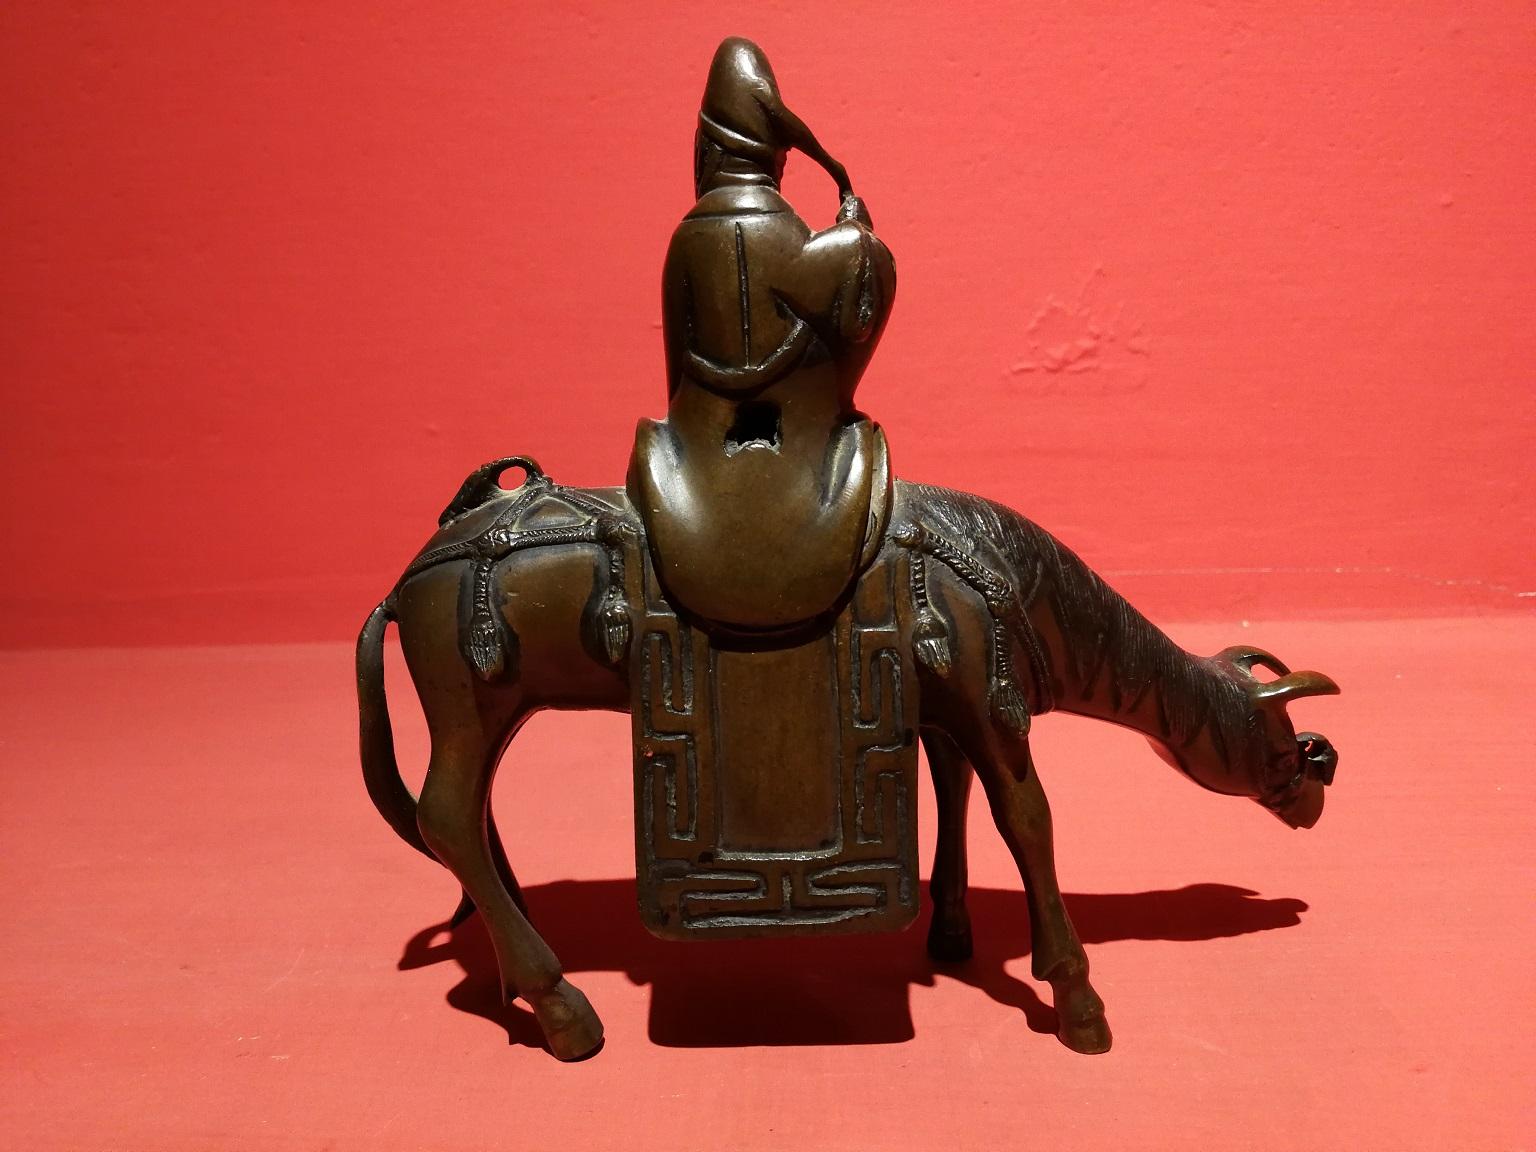 Bronze chinois brûlant des parfums 18 siècle - Or Figurative Sculpture par Unknown